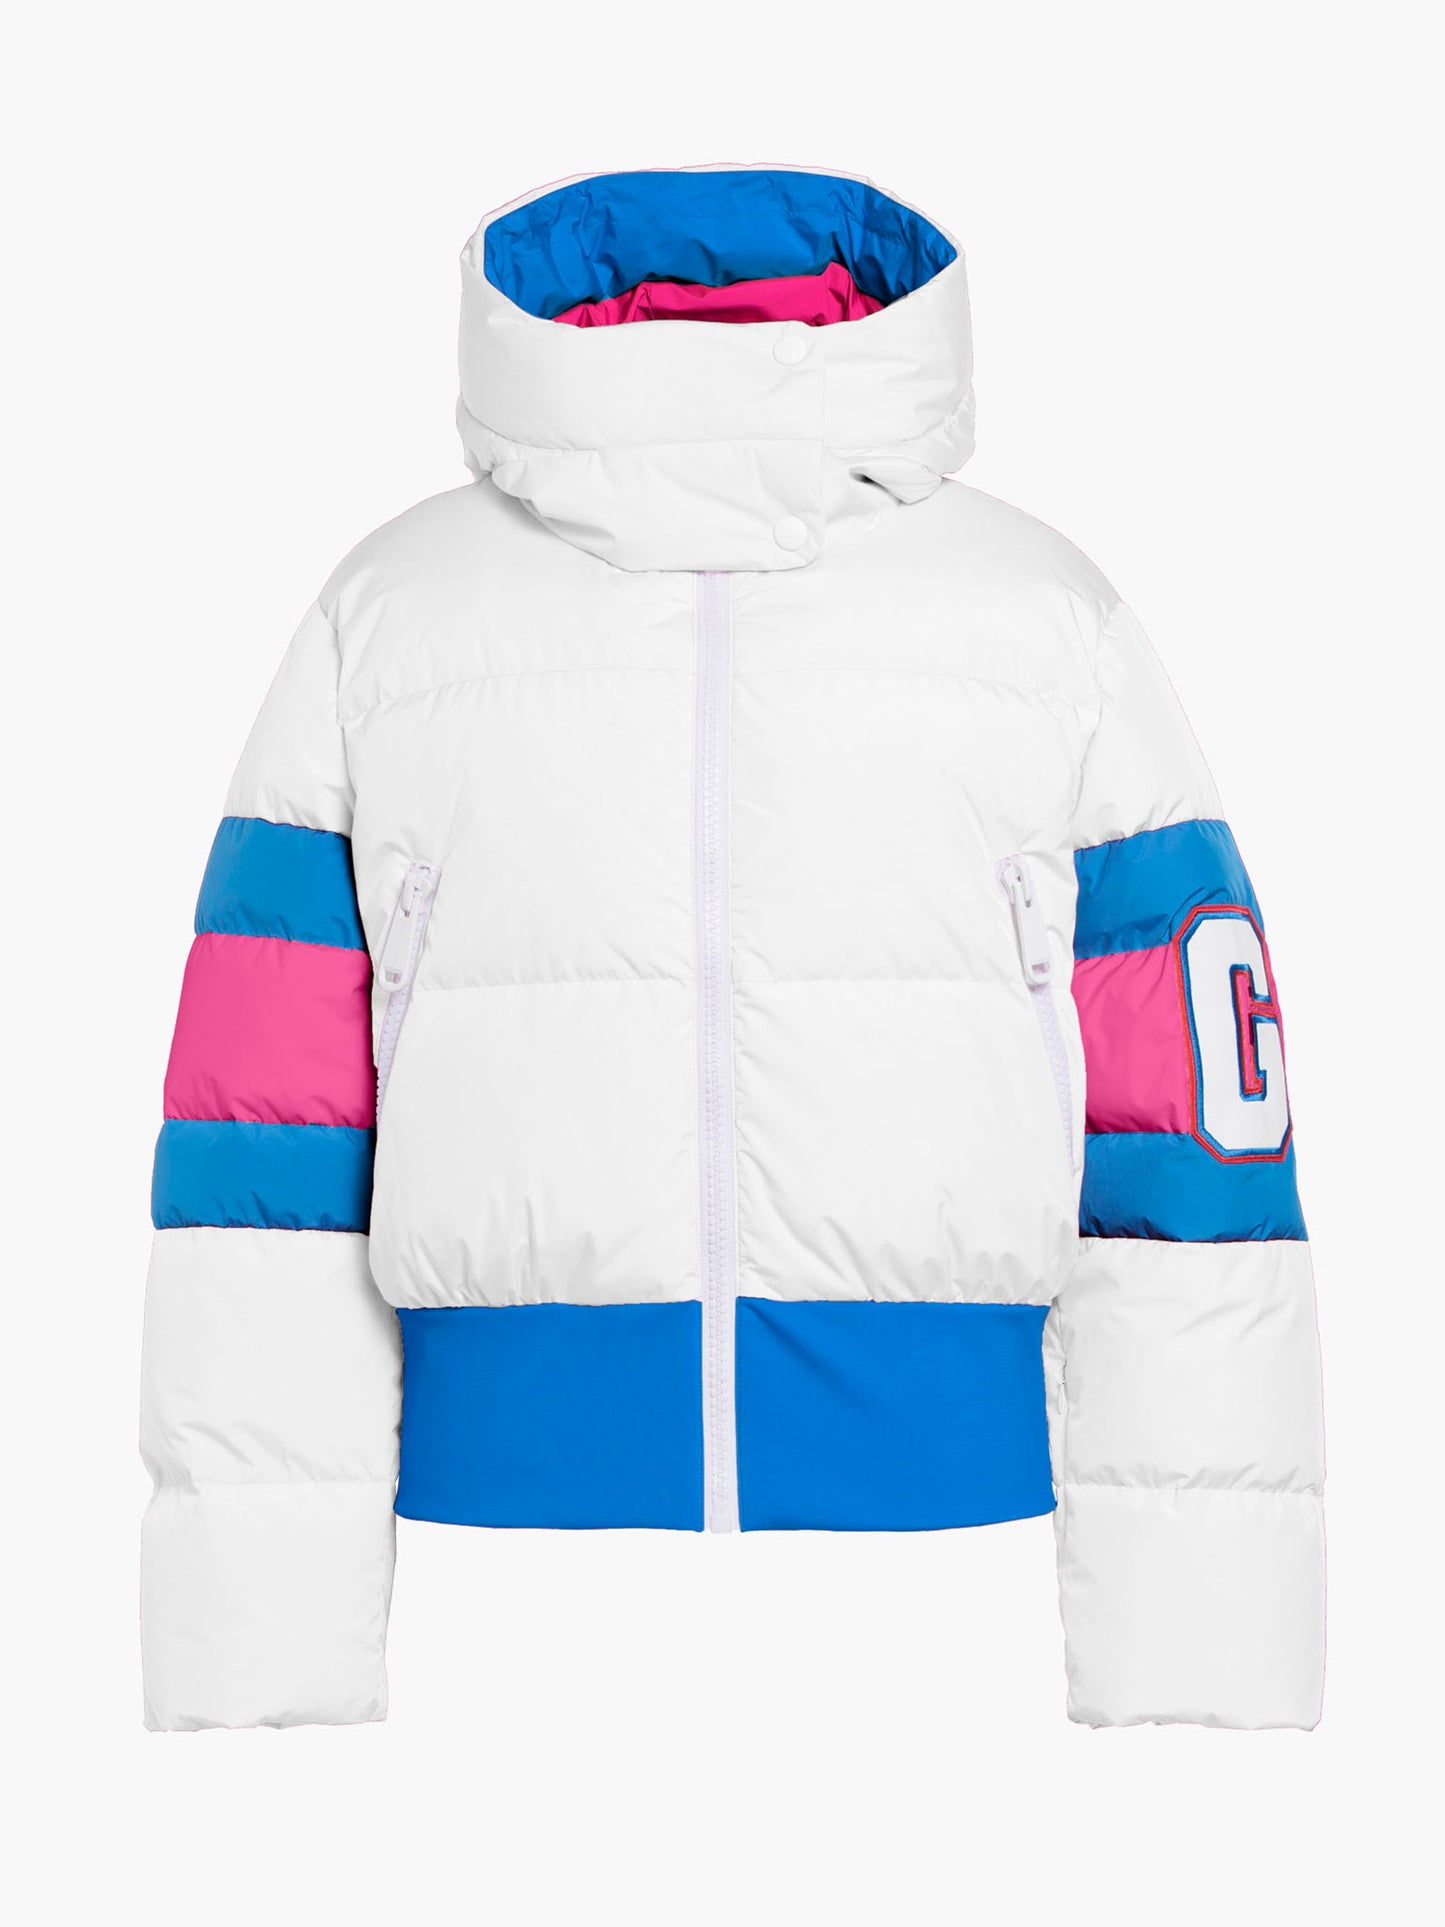 PUCK ski jacket